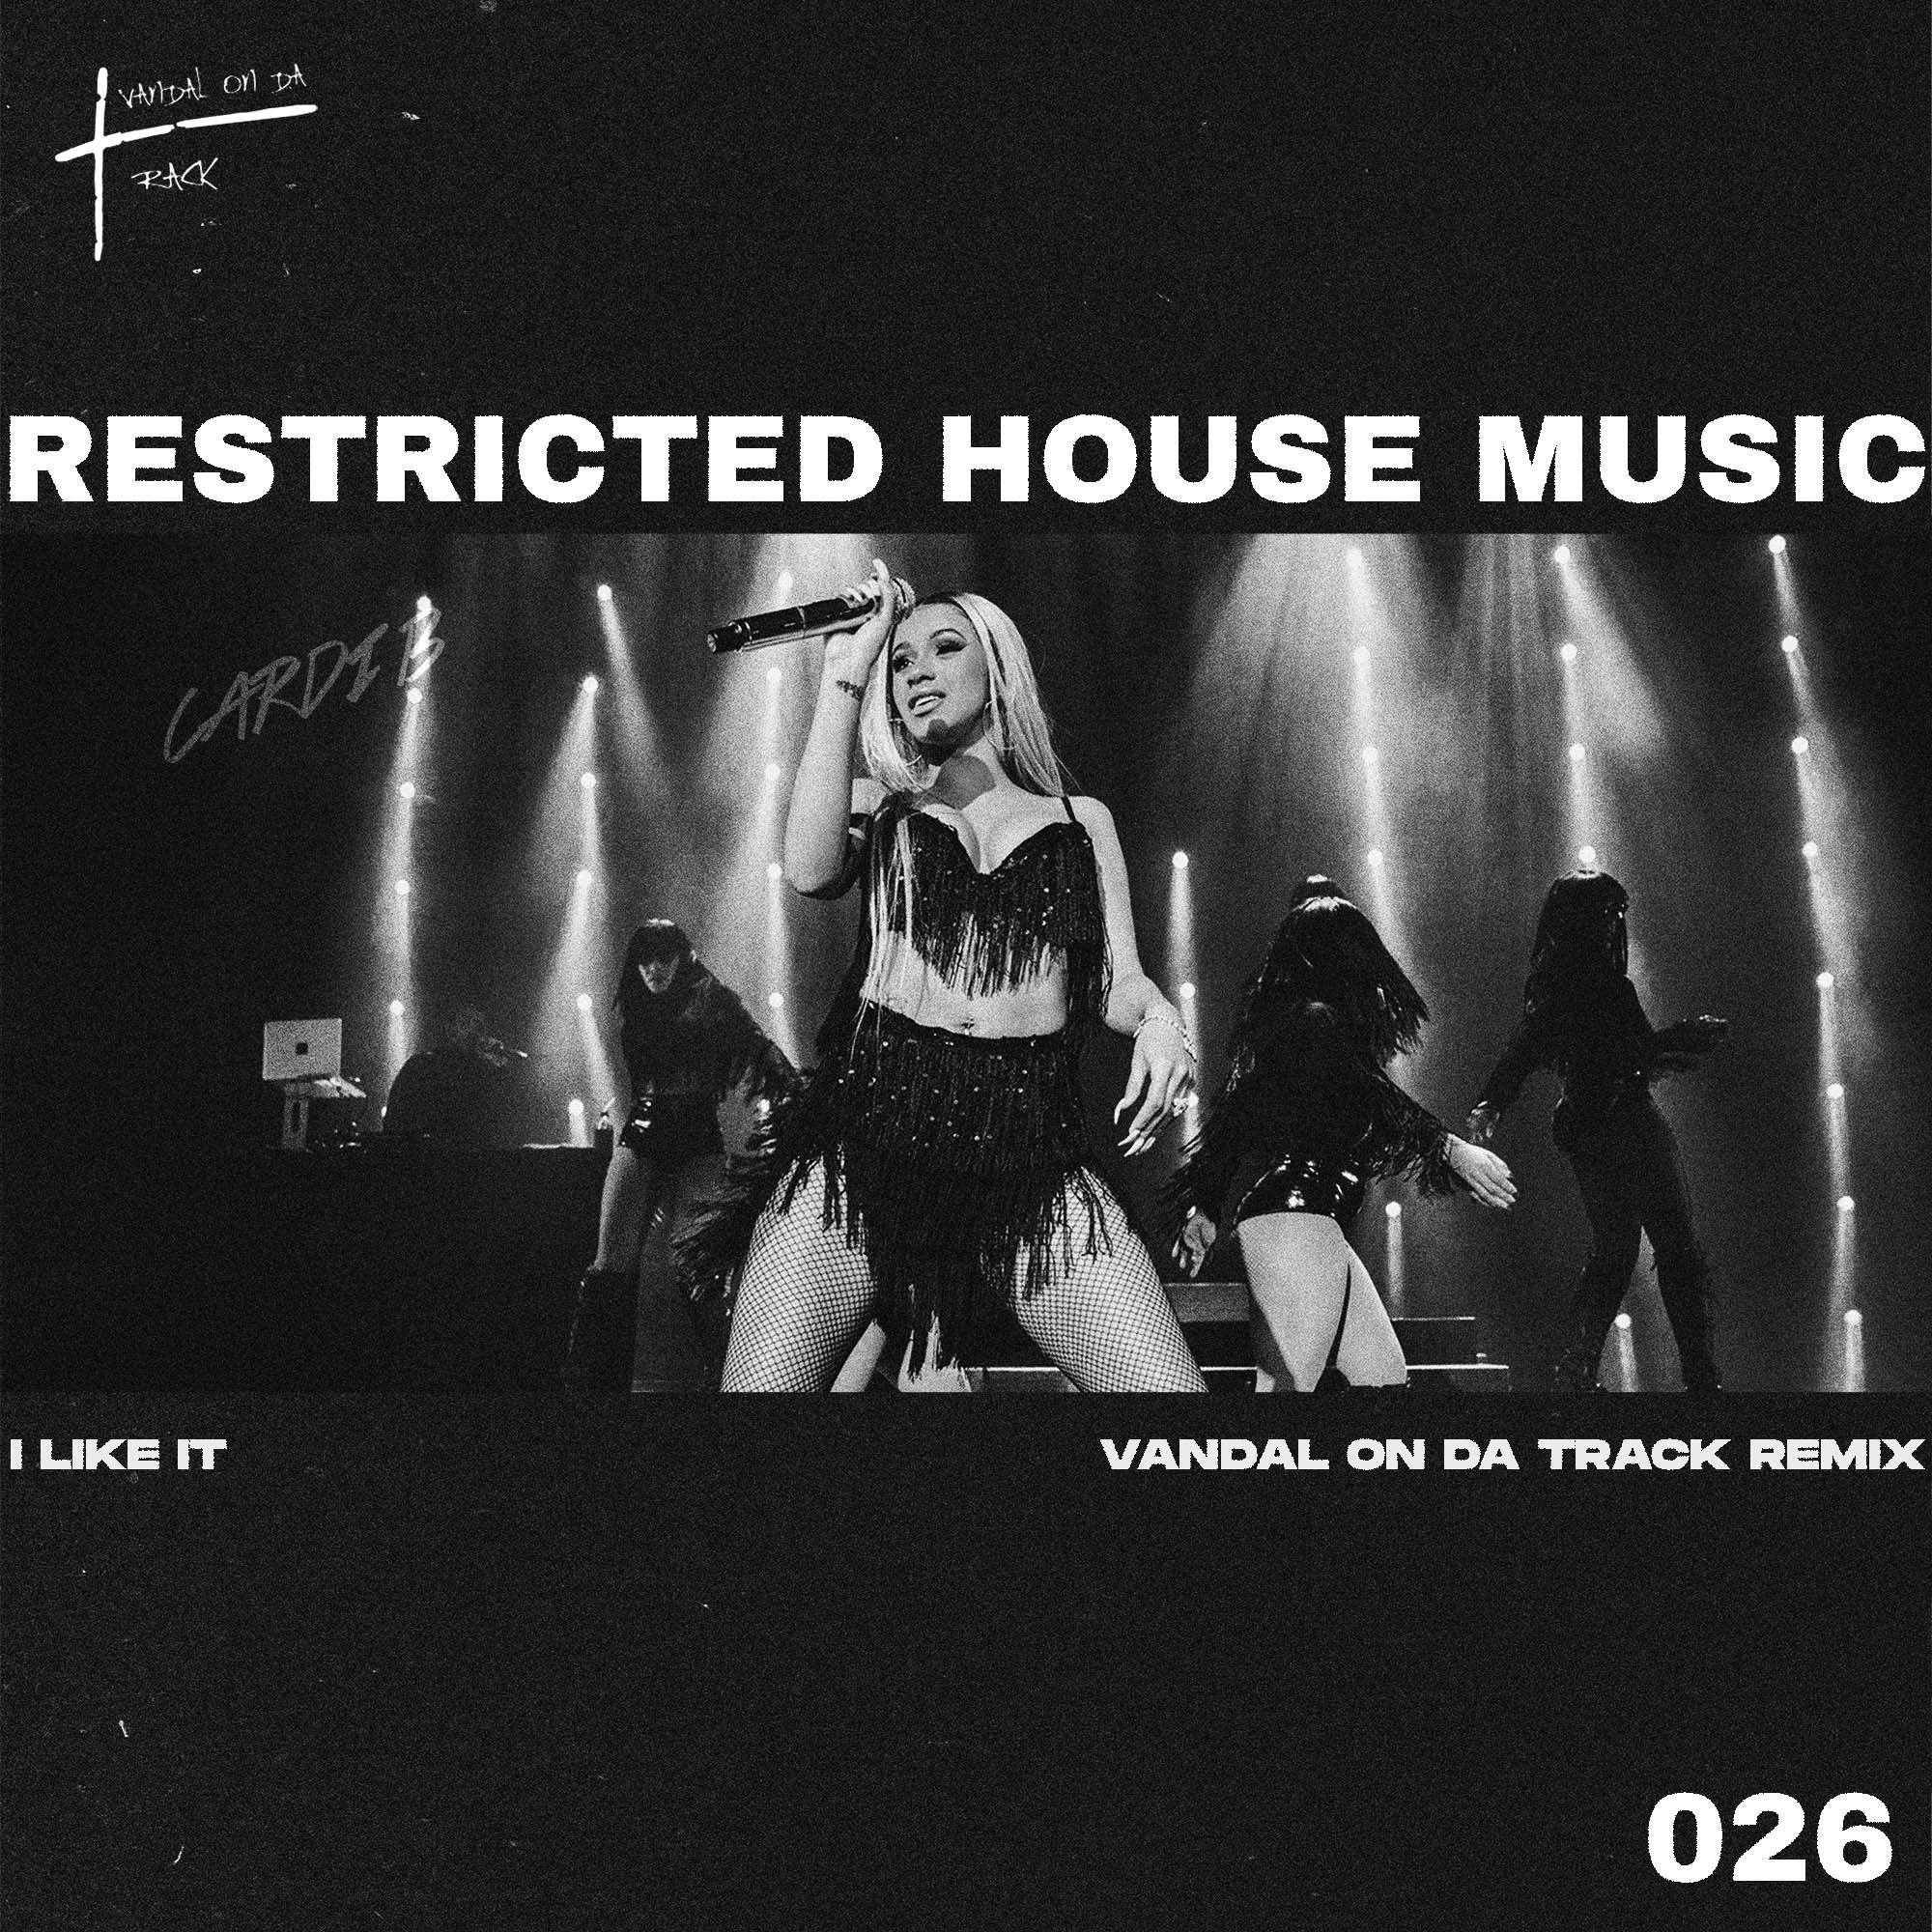 ਡਾਉਨਲੋਡ ਕਰੋ Cardi B - I Like It (Vandal On Da Track & Ravage Remix) (Restricted House Music 026) FREE DL